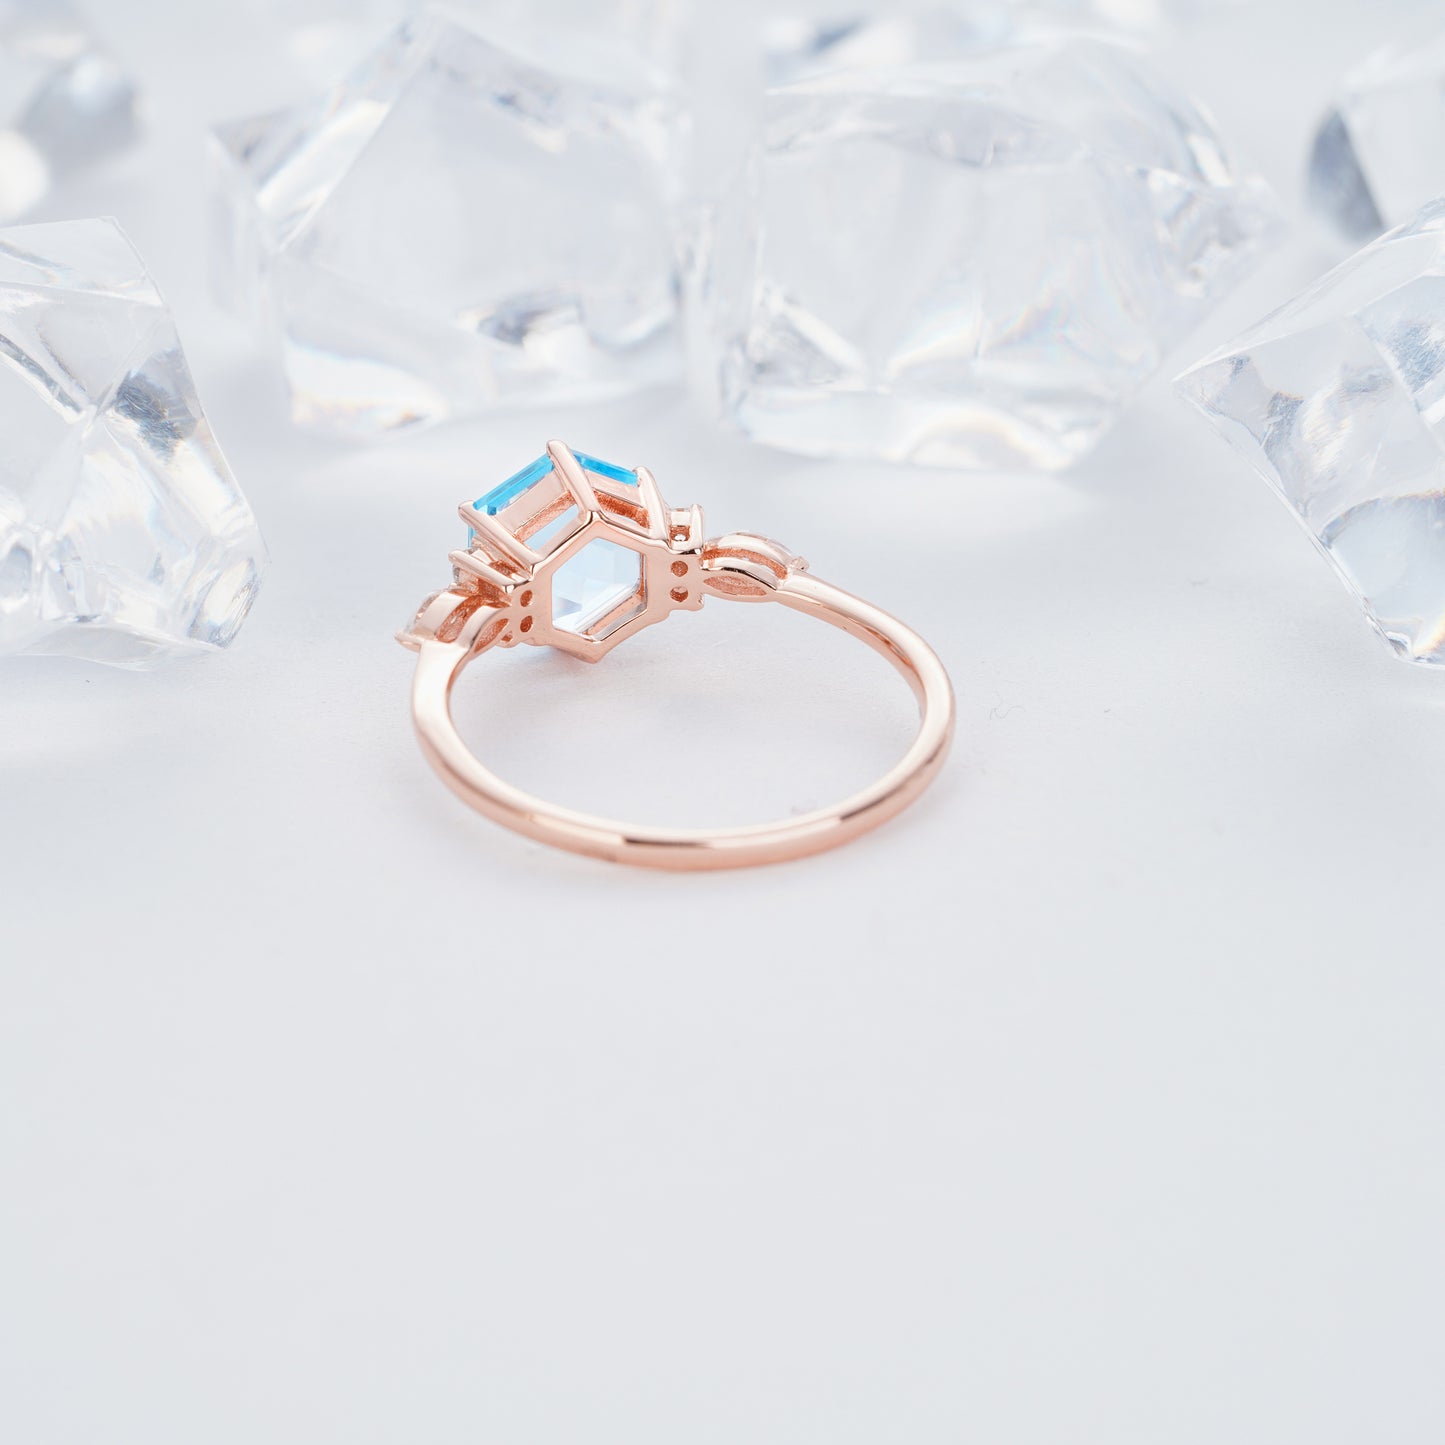 1.7ct 7mm Hexagon Swiss Blue Topaz Diamond Engagement Ring14K/18KRose/Yellow/White Gold Ring - ShainJewelry